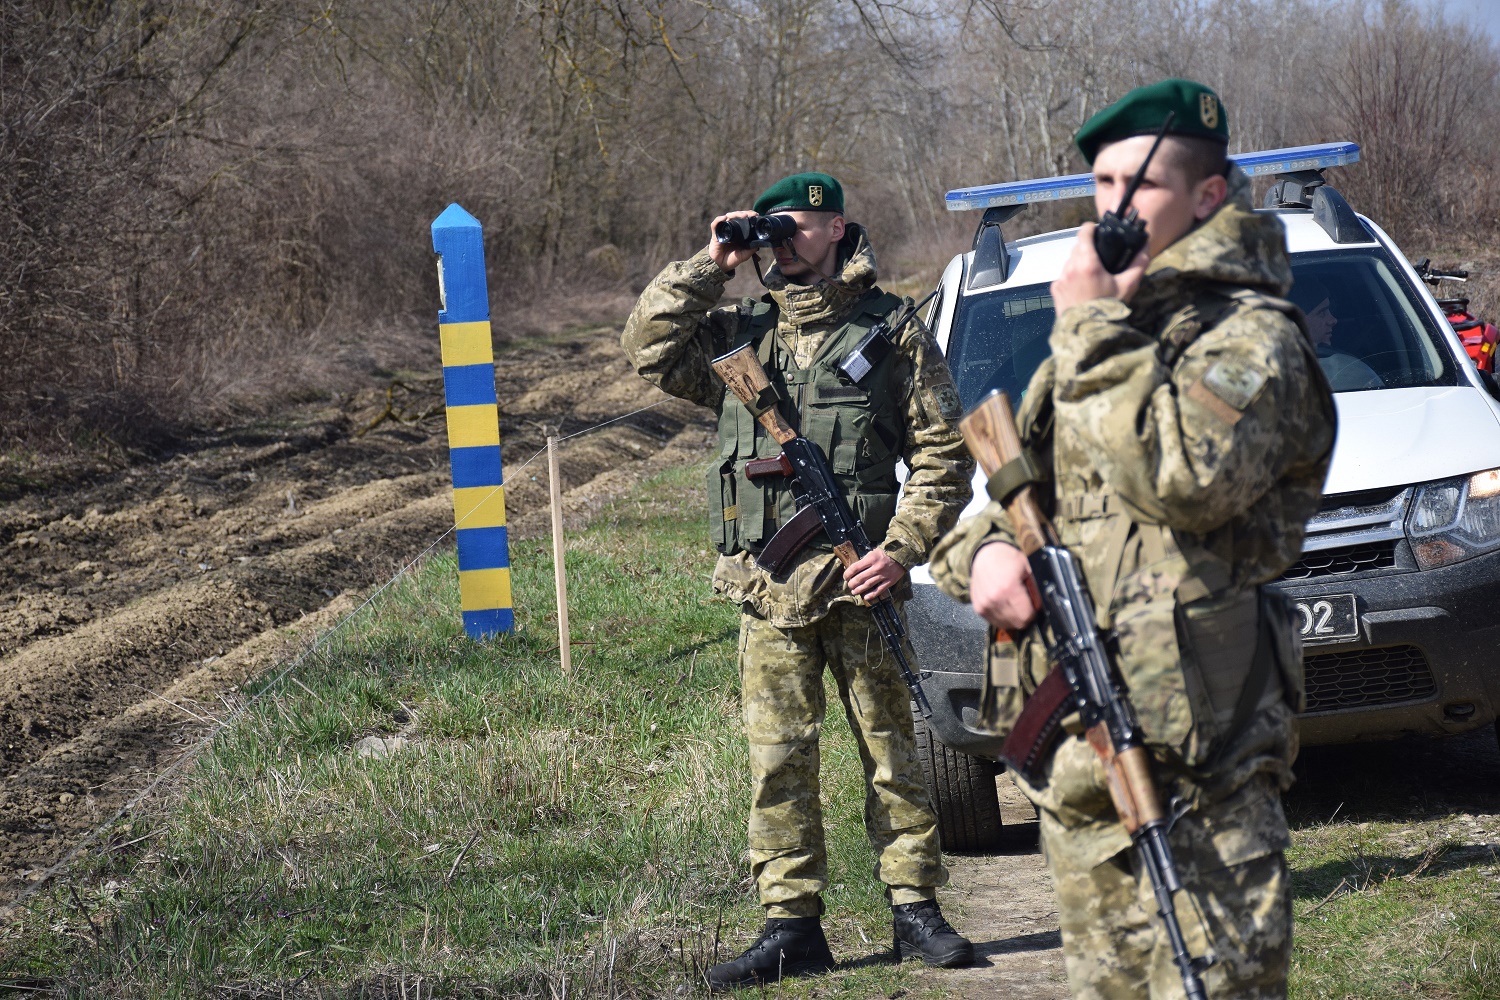 Служба на границе с украиной